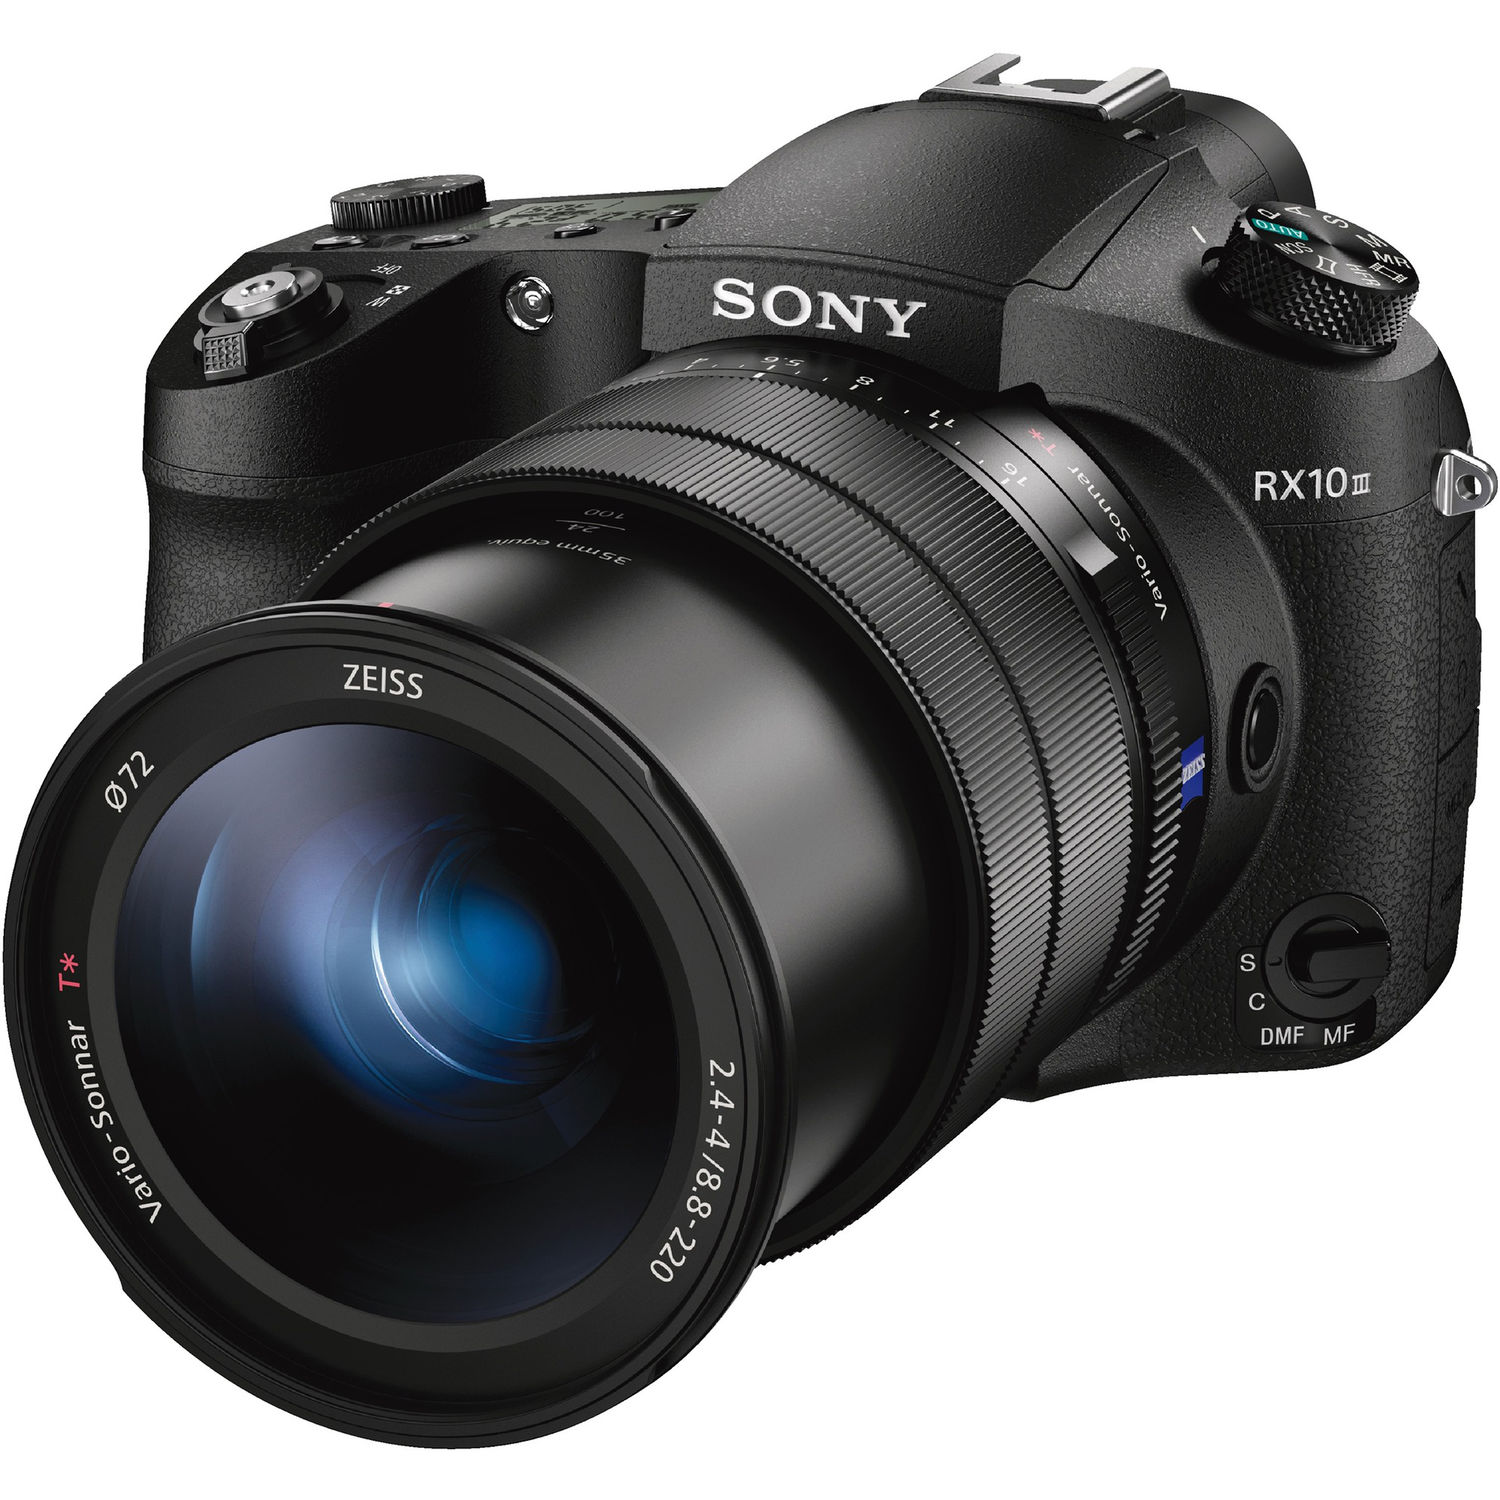 Sony DSC-RX10 III Cyber-shot Digital  Camera